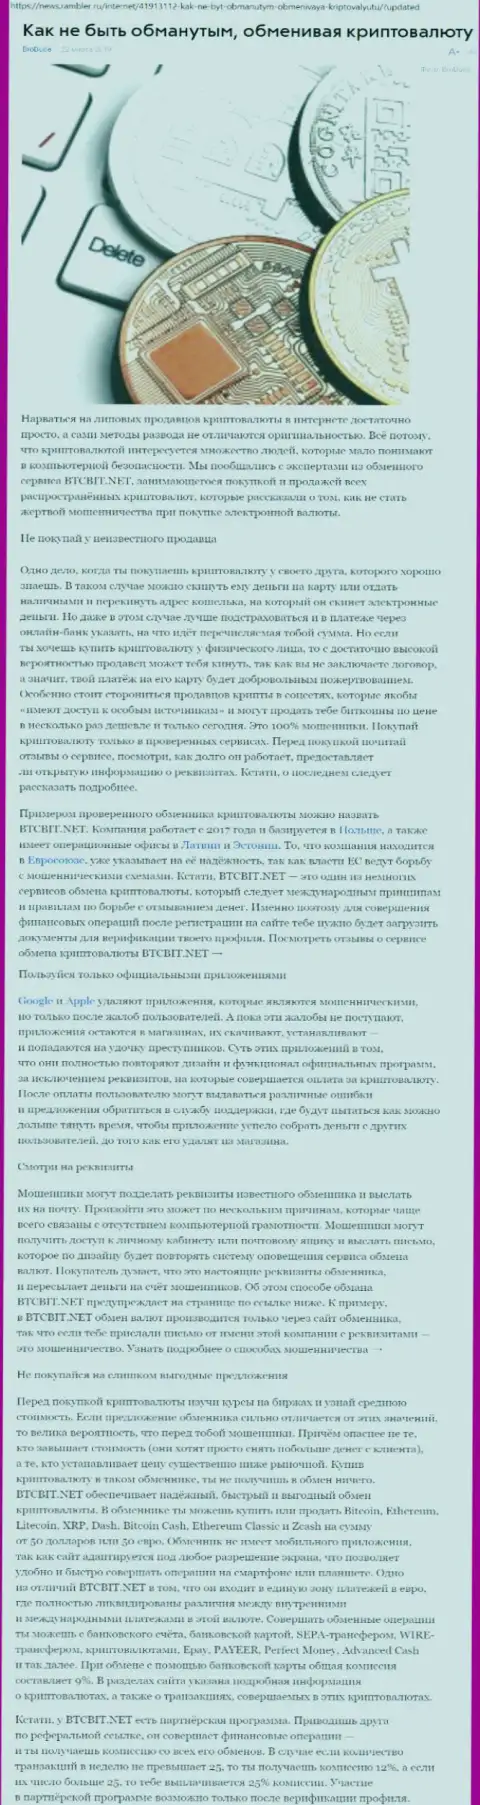 Статья о компании БТЦБИТ Нет на news rambler ru